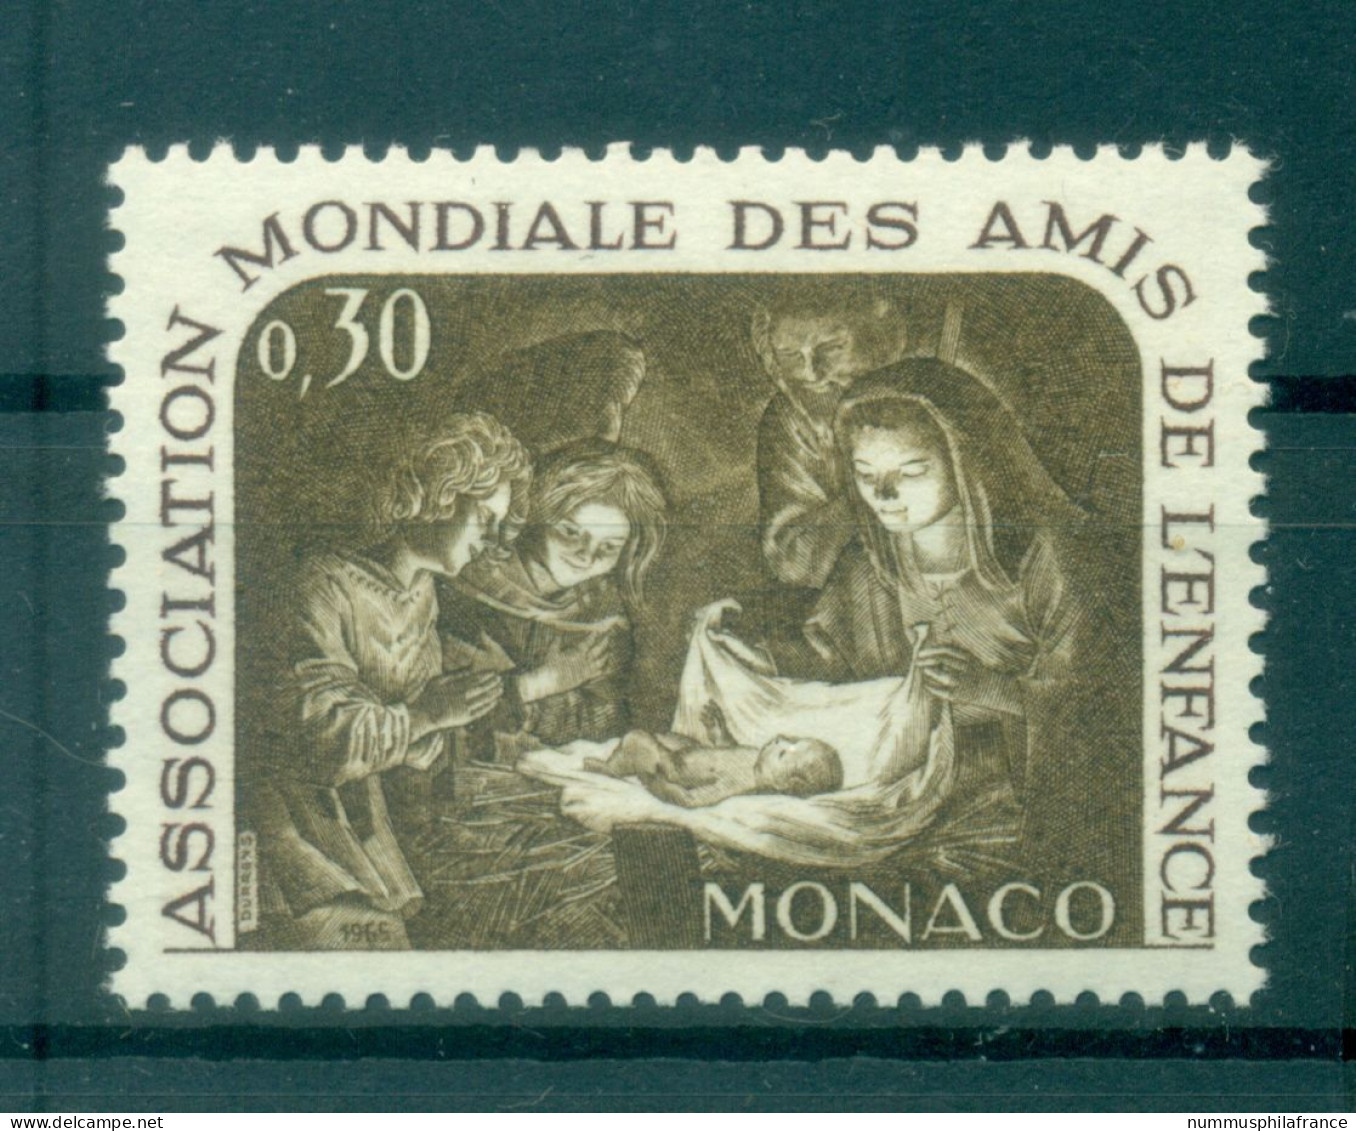 Monaco 1966 - Y & T  N. 688 - AMADE - Unused Stamps